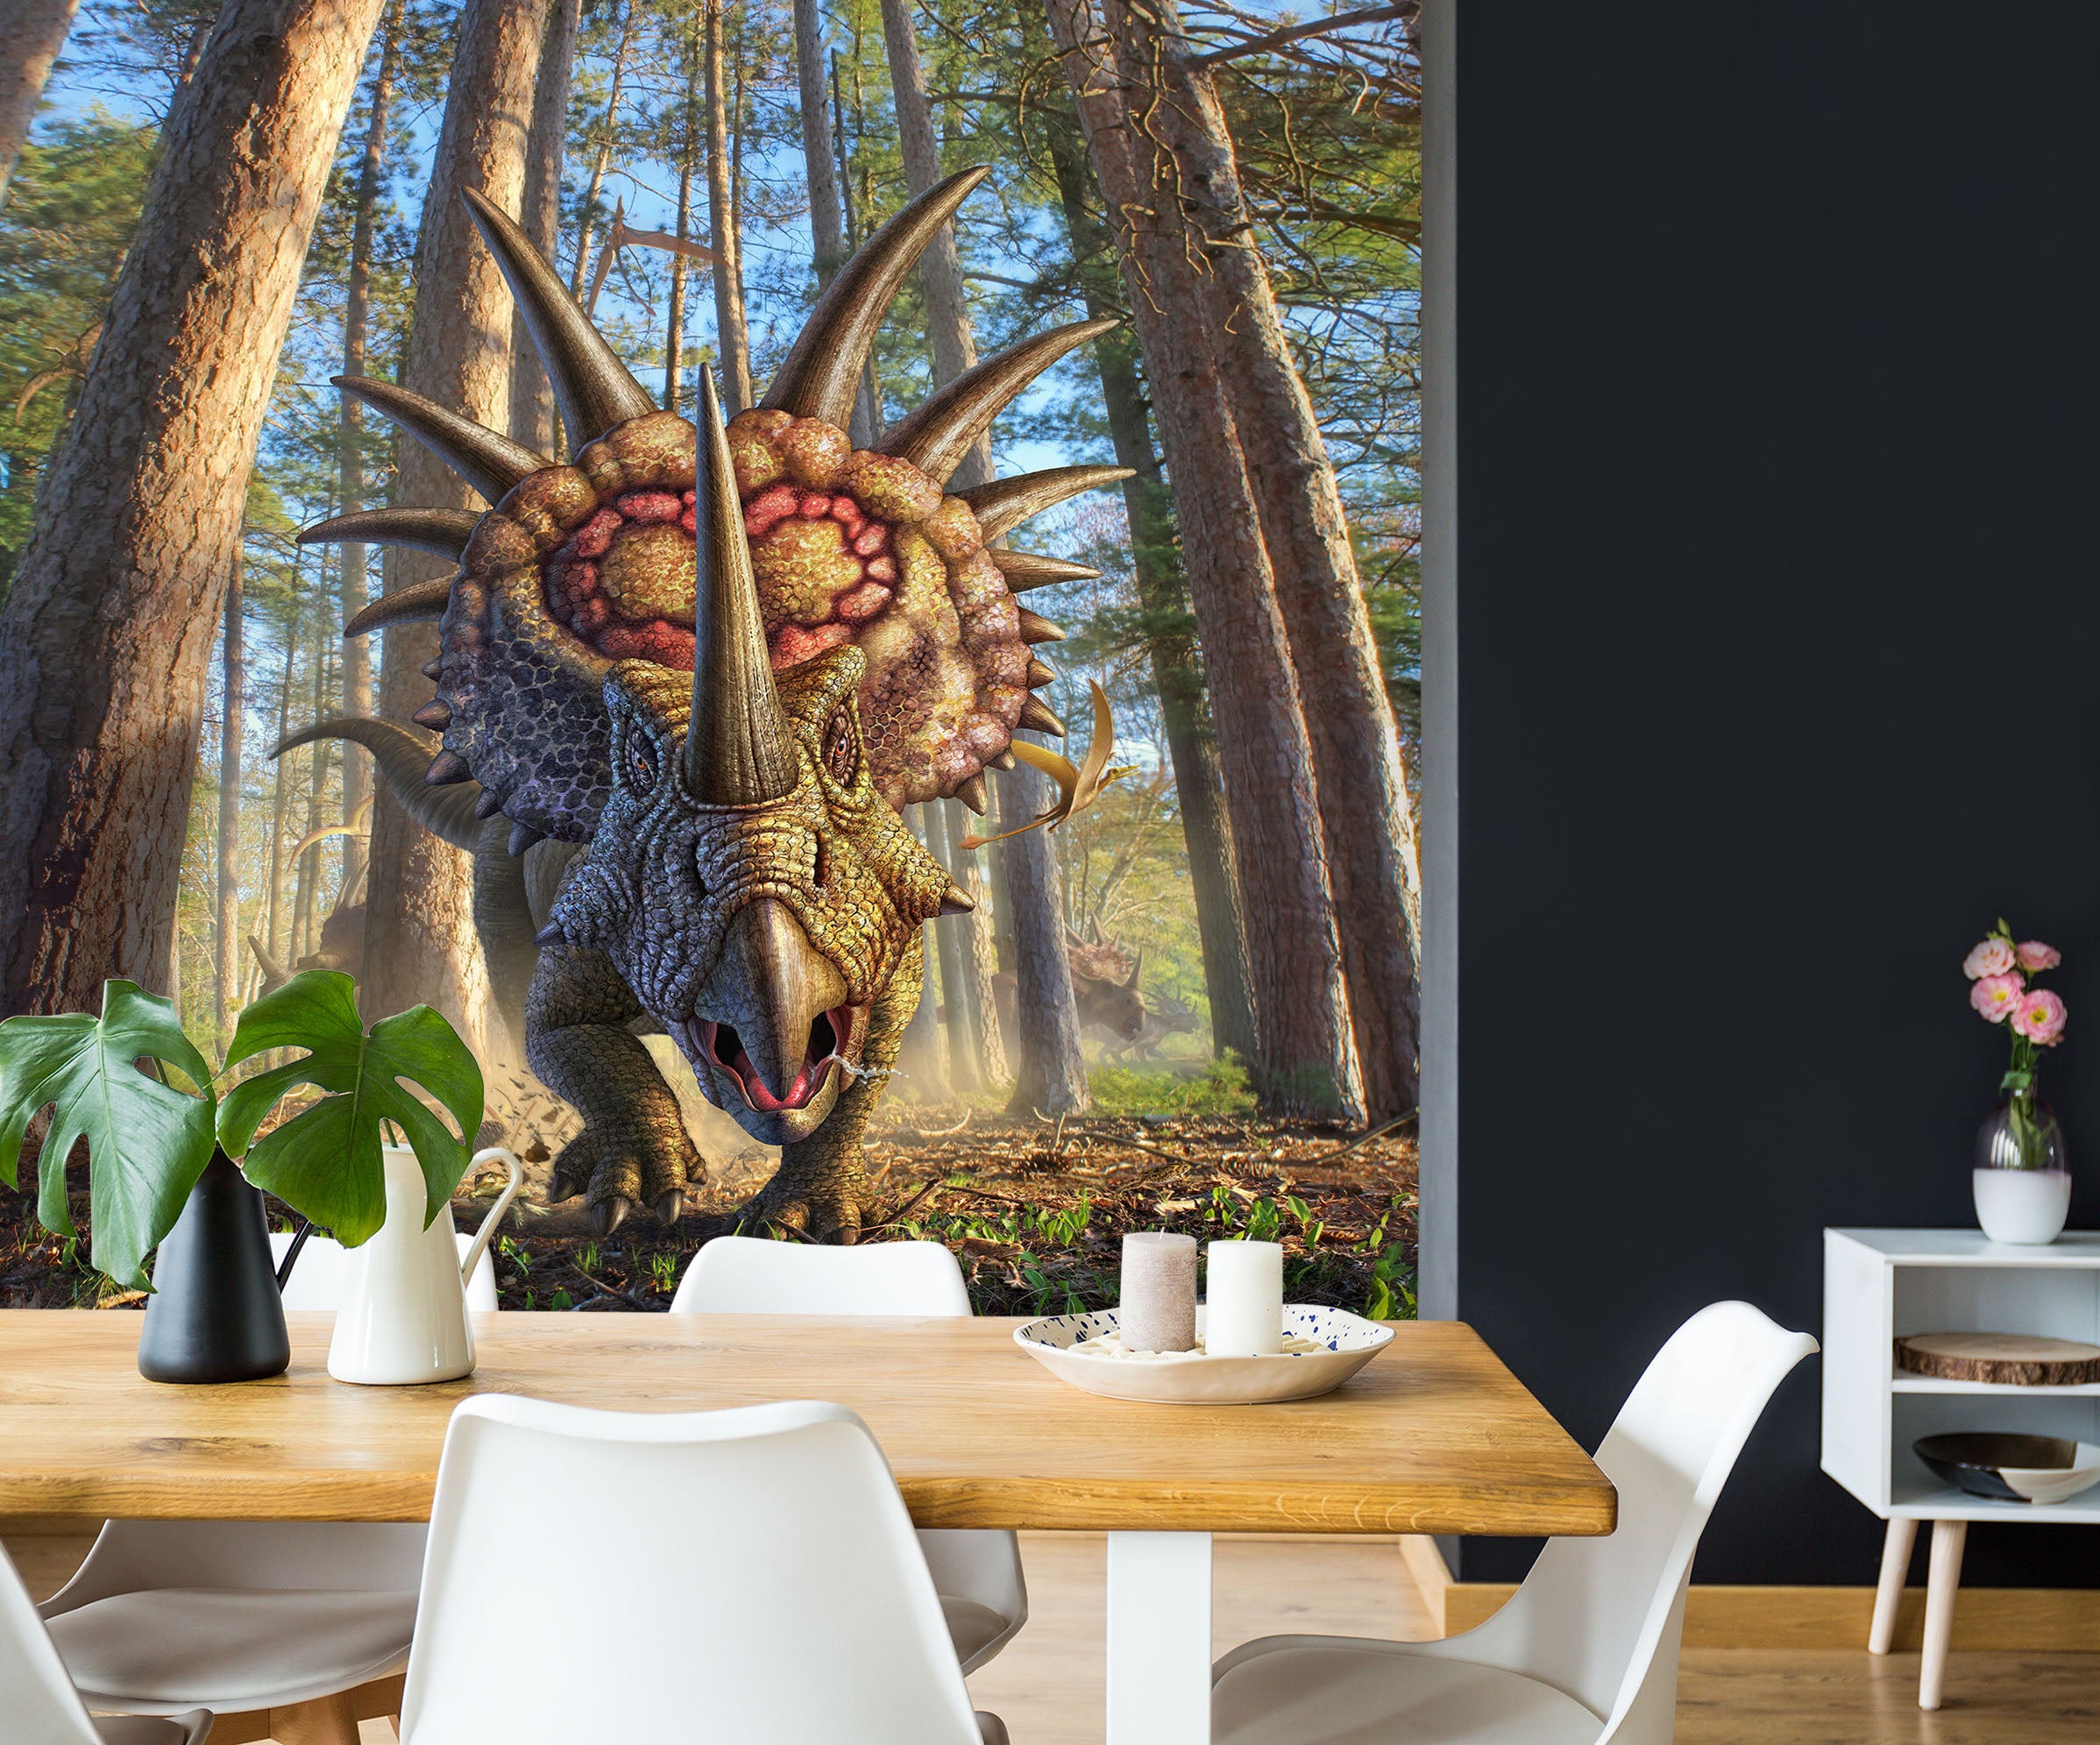 3D Styracosaurus 85027 Jerry LoFaro Wall Mural Wall Murals